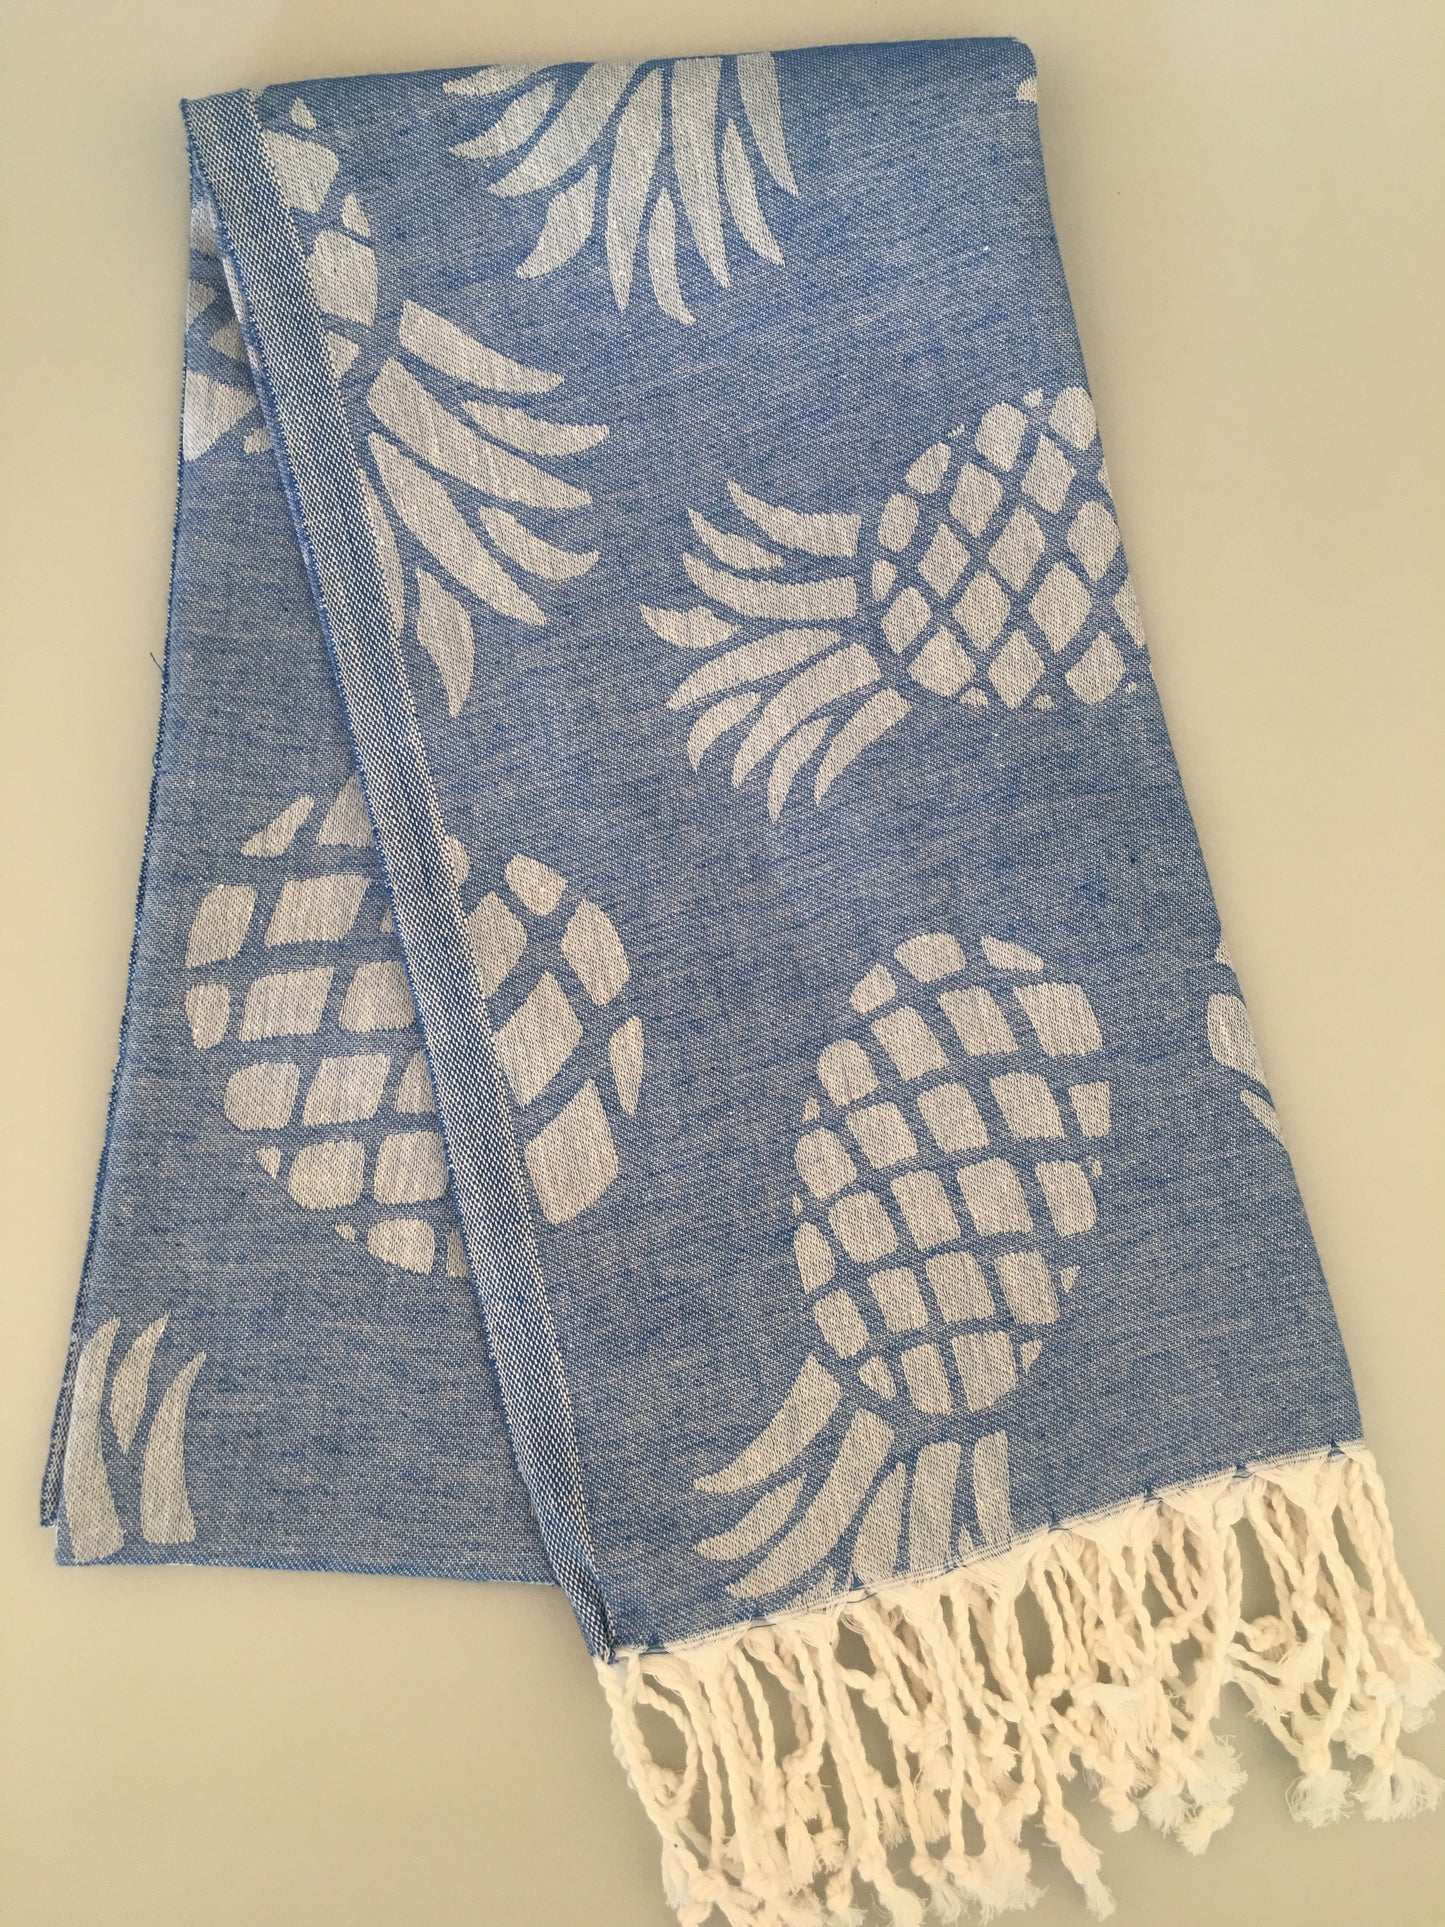 200pcs/LOT Side Pineapple Turkish Towel Jacquard Peshtemal (300g / 400g) - Wholesale Price